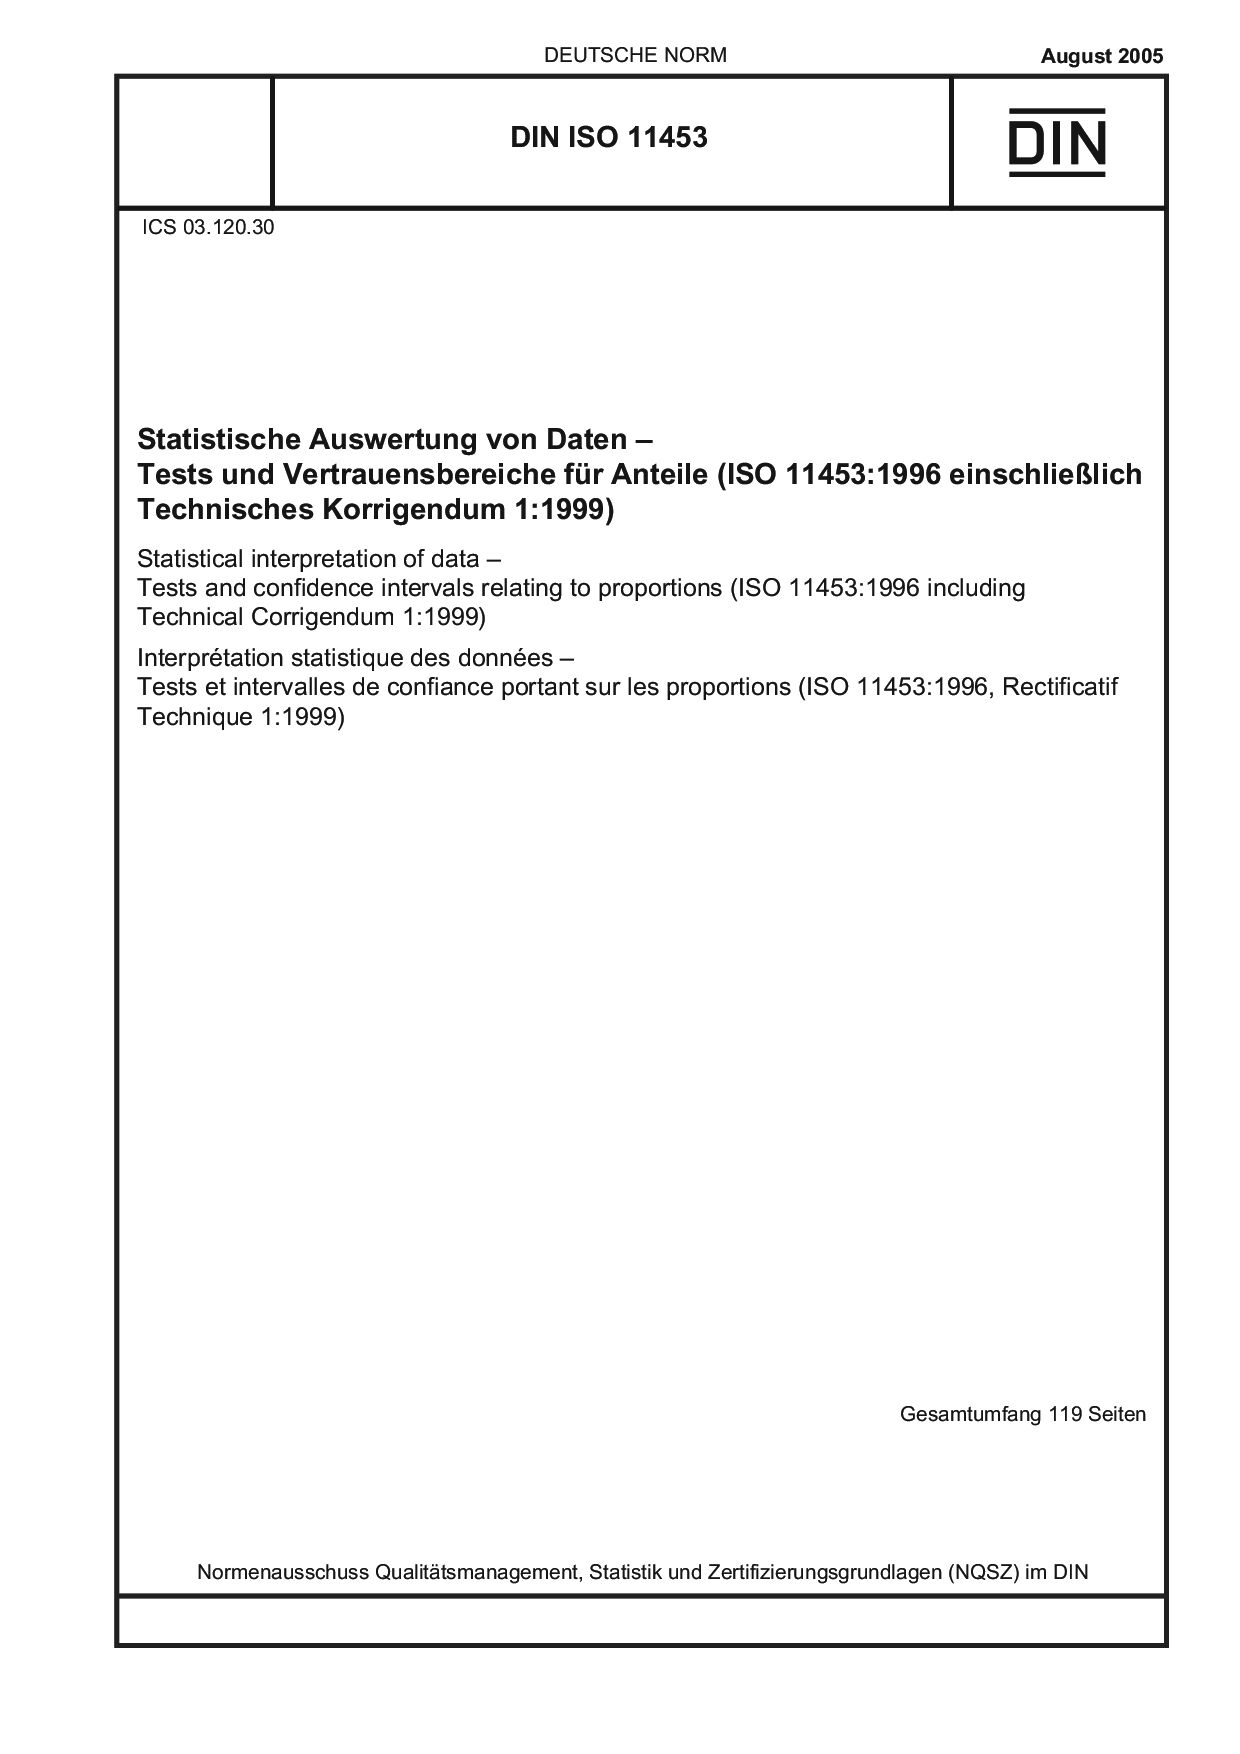 DIN ISO 11453:2005封面图